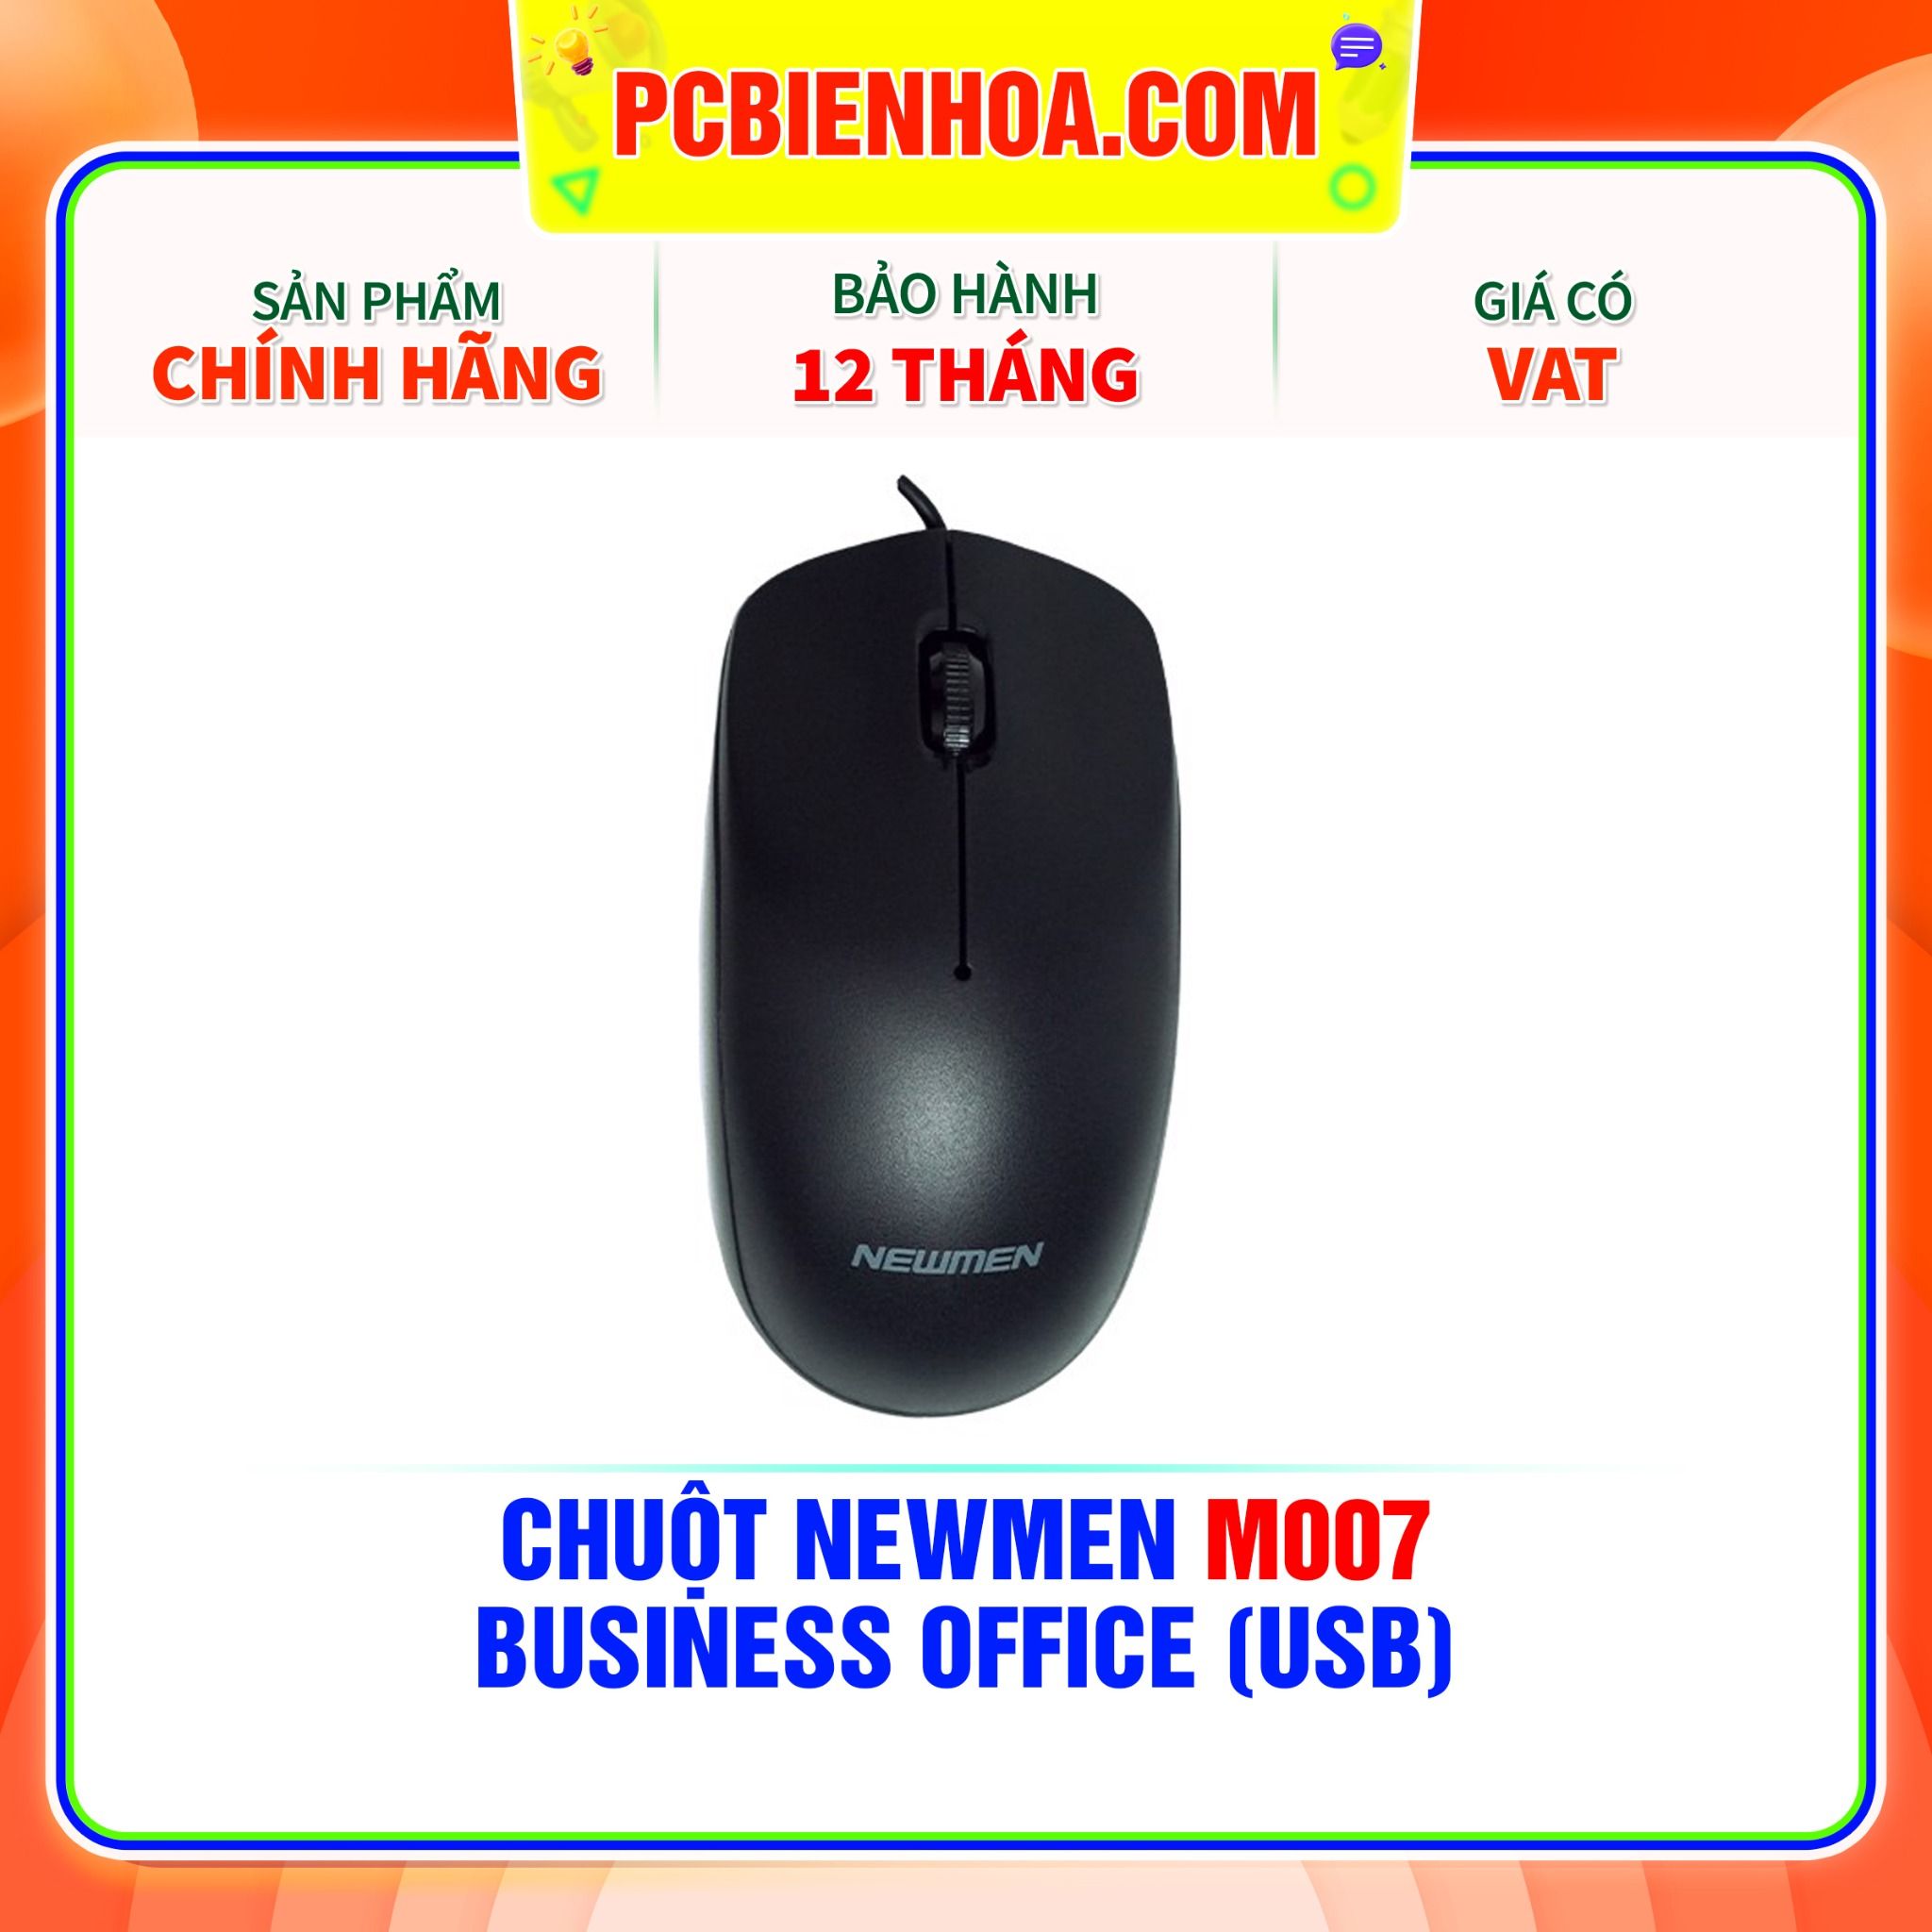  CHUỘT NEWMEN M007 - BUSINESS OFFICE (USB) 